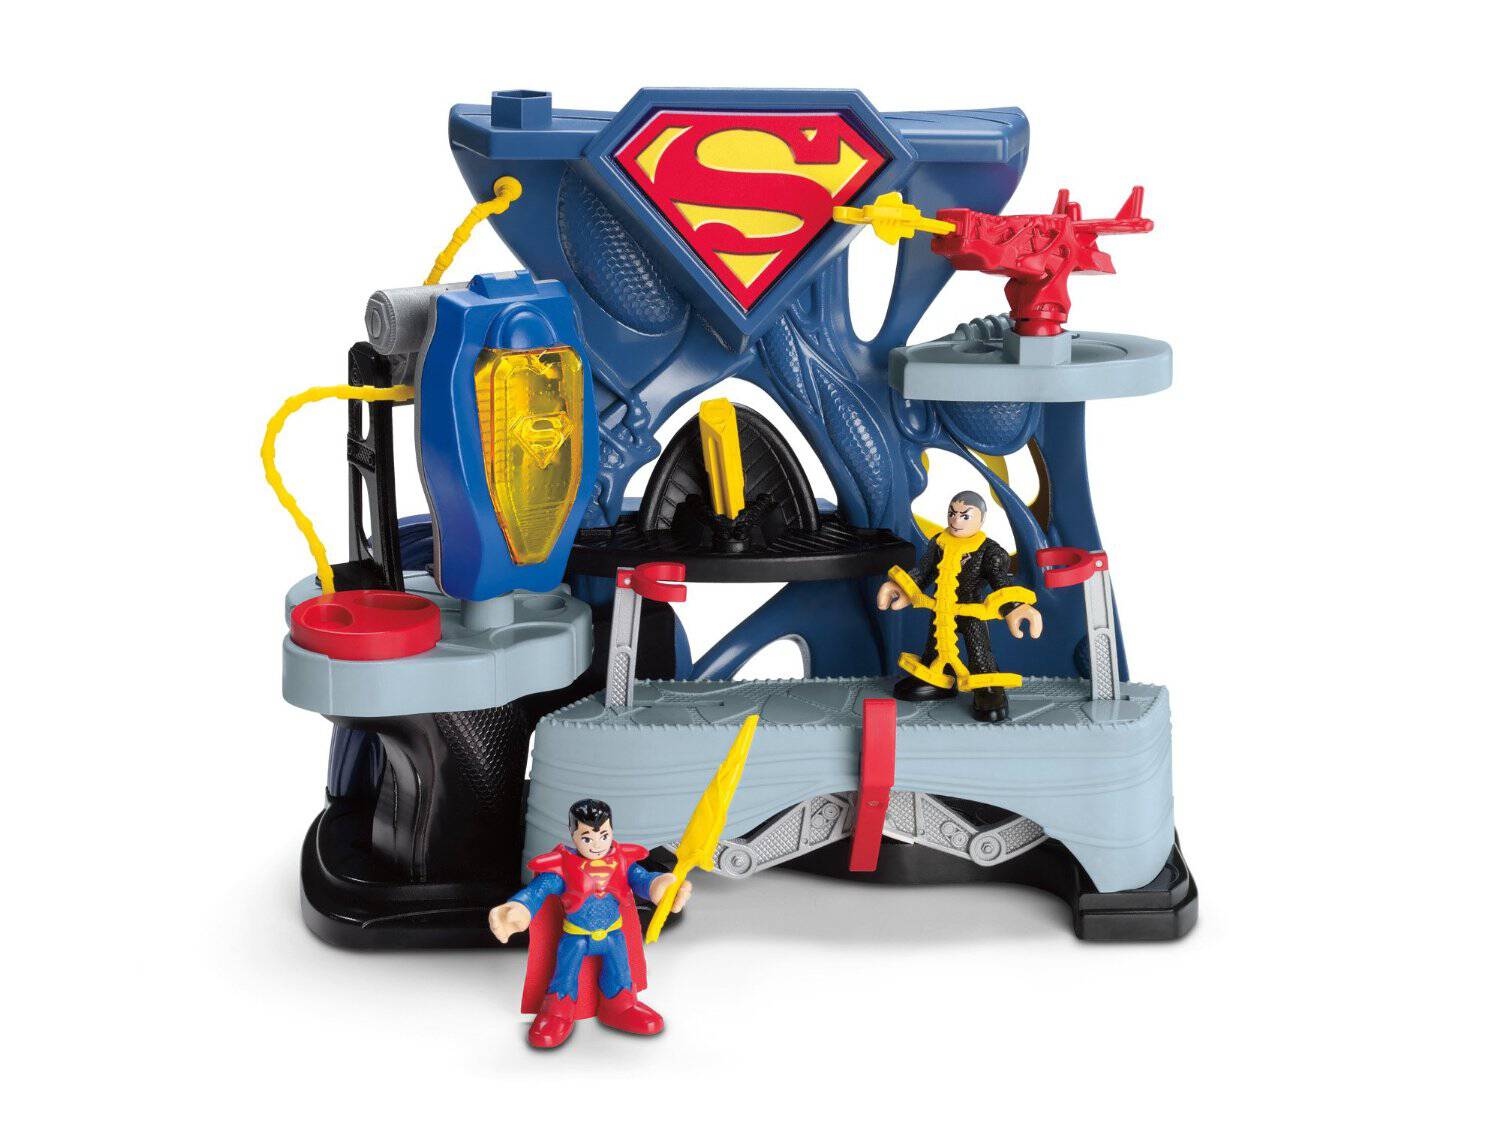 Imaginext DC Super Friends Superman Robot